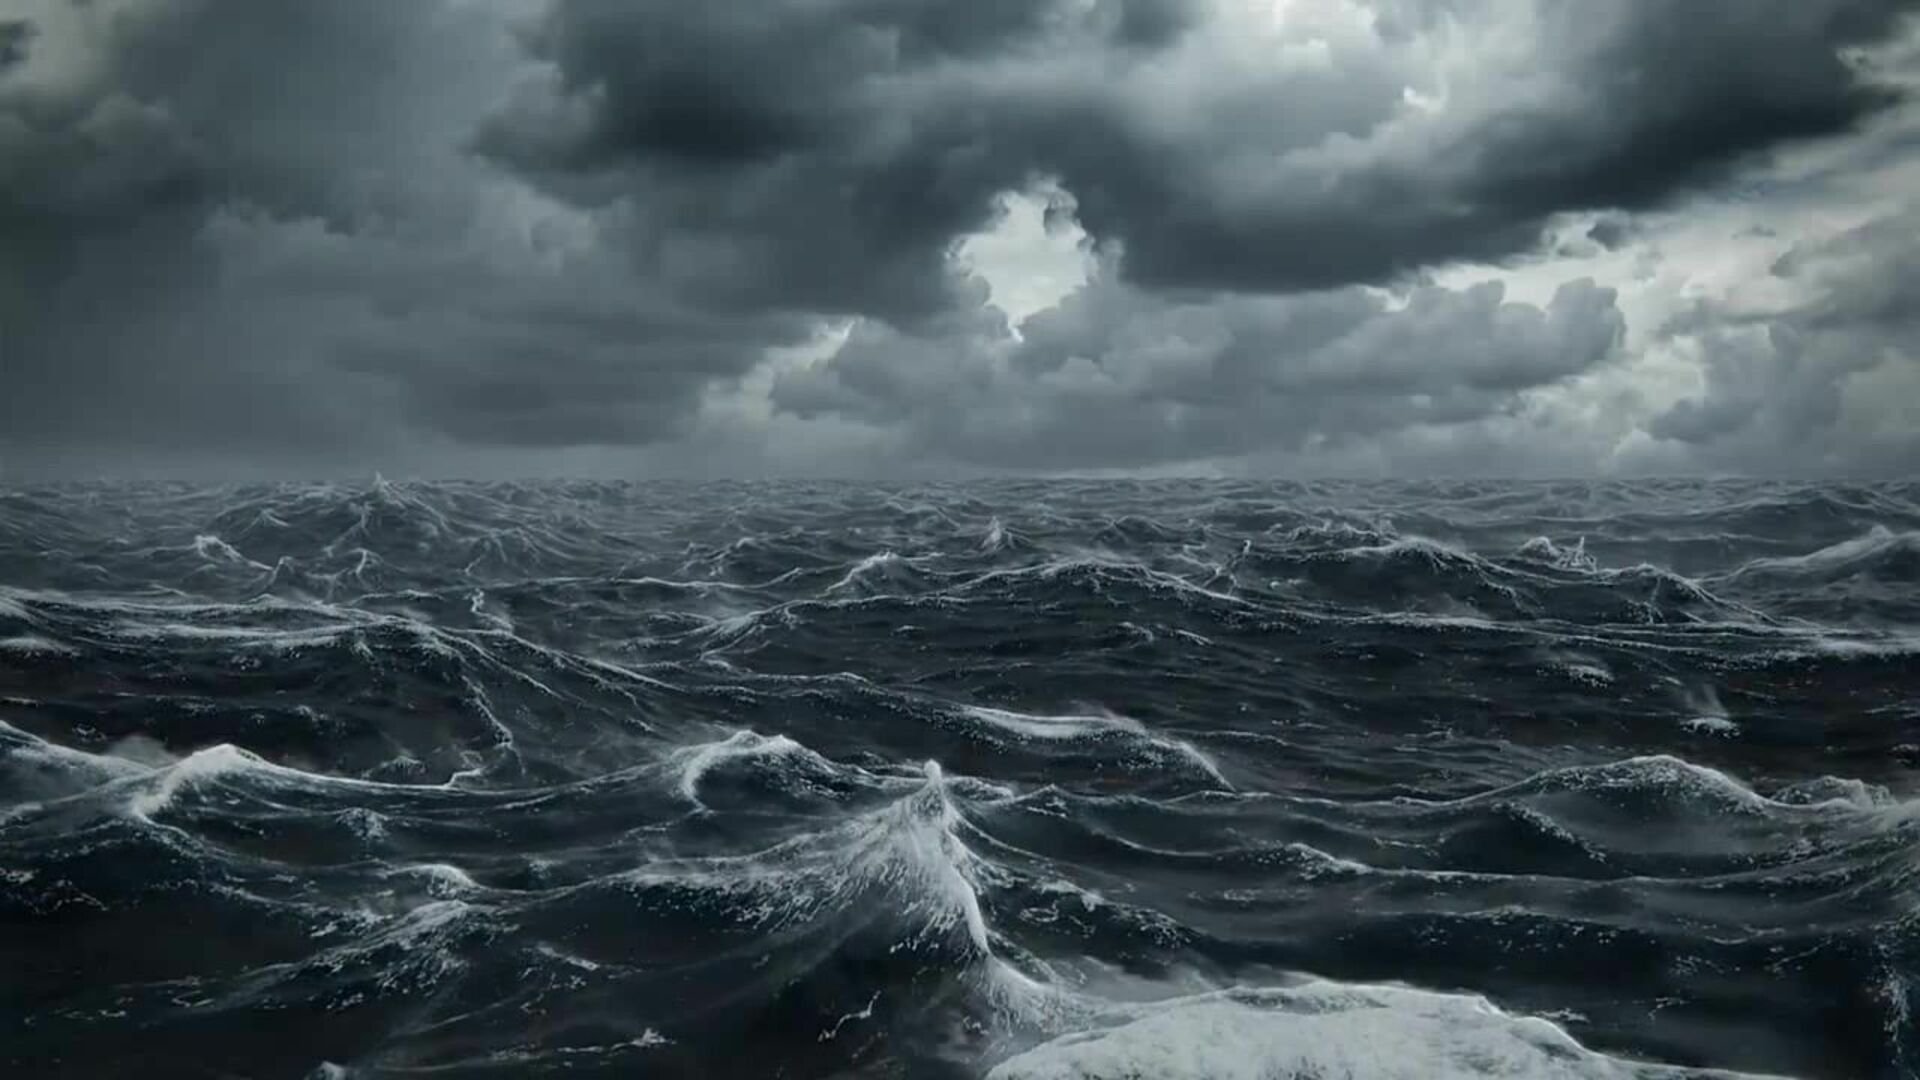 More fora. Море шторм. Карское море шторм. Северный Ледовитый океан шторм. Баренцево море шторм.